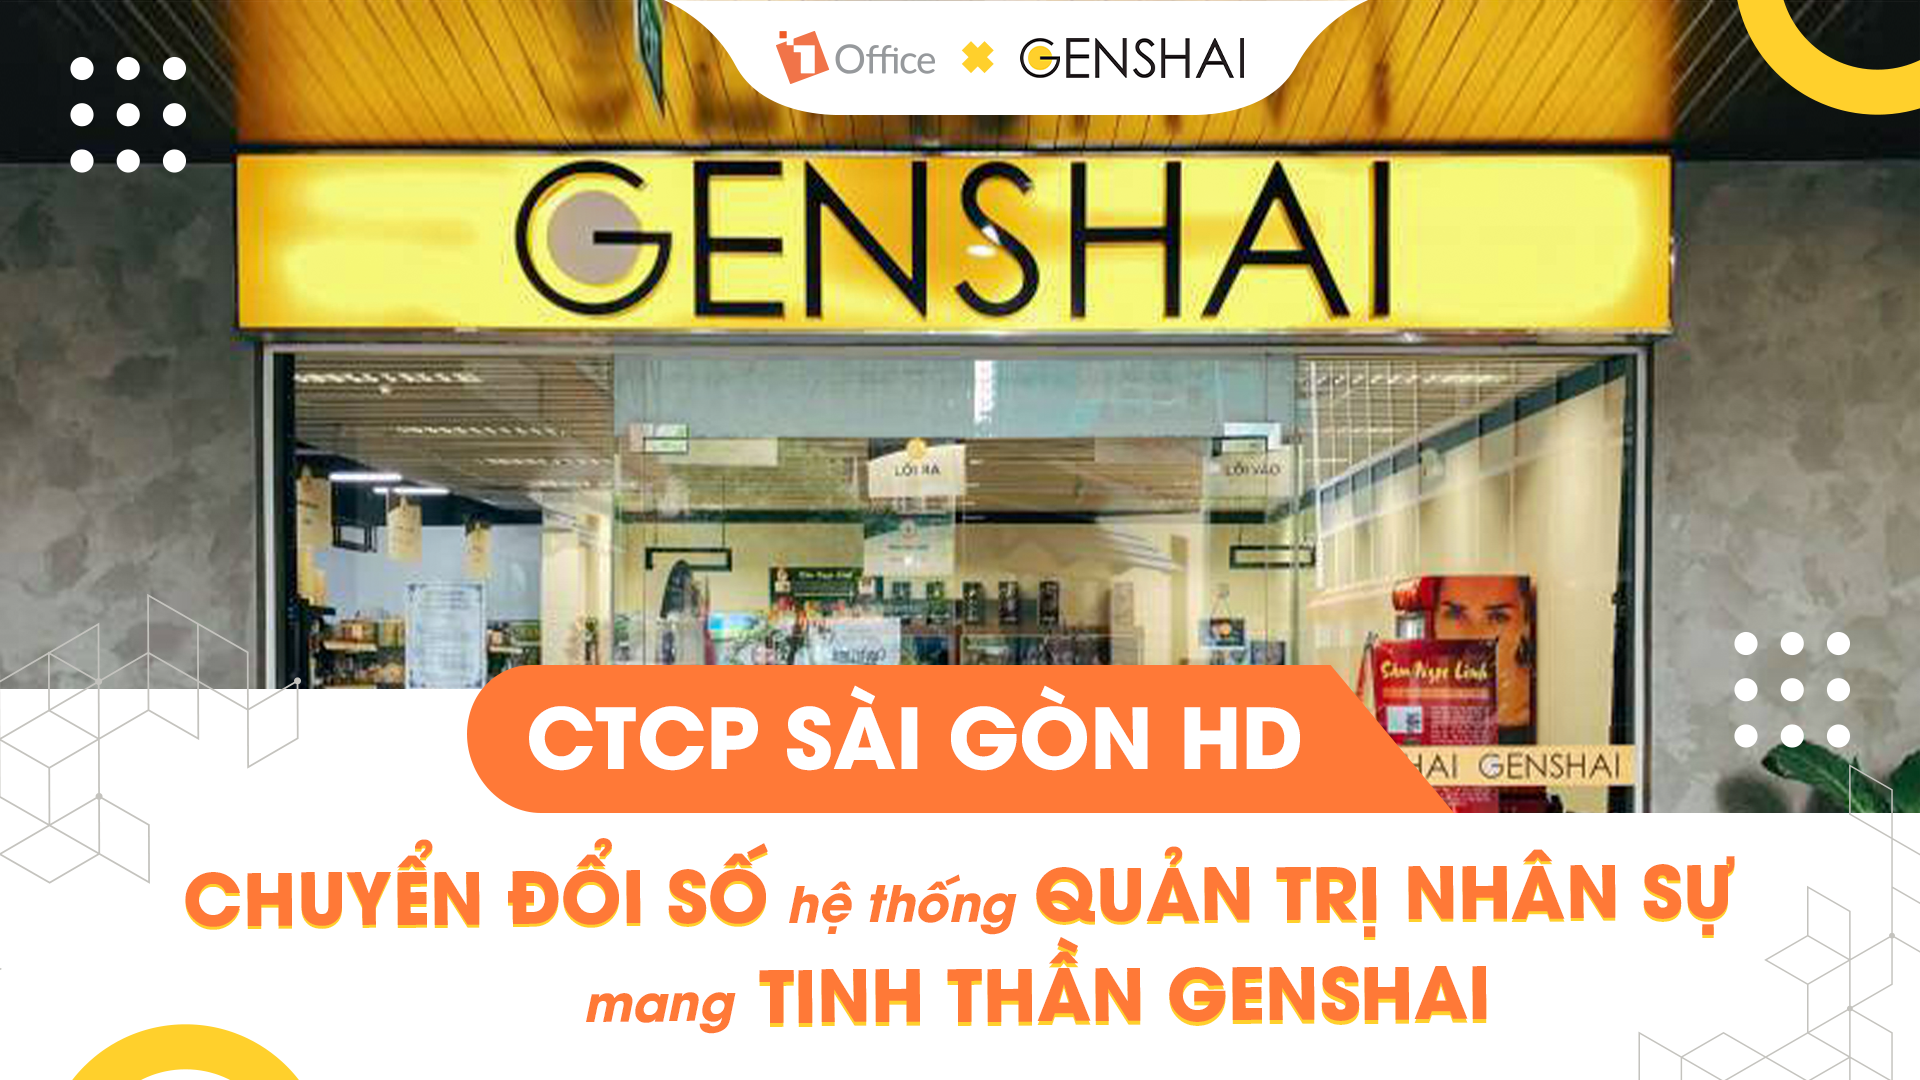 CTCP Sài Gòn HD: chuyển đổi số hệ thống quản trị nhân sự mang tinh thần Genshai